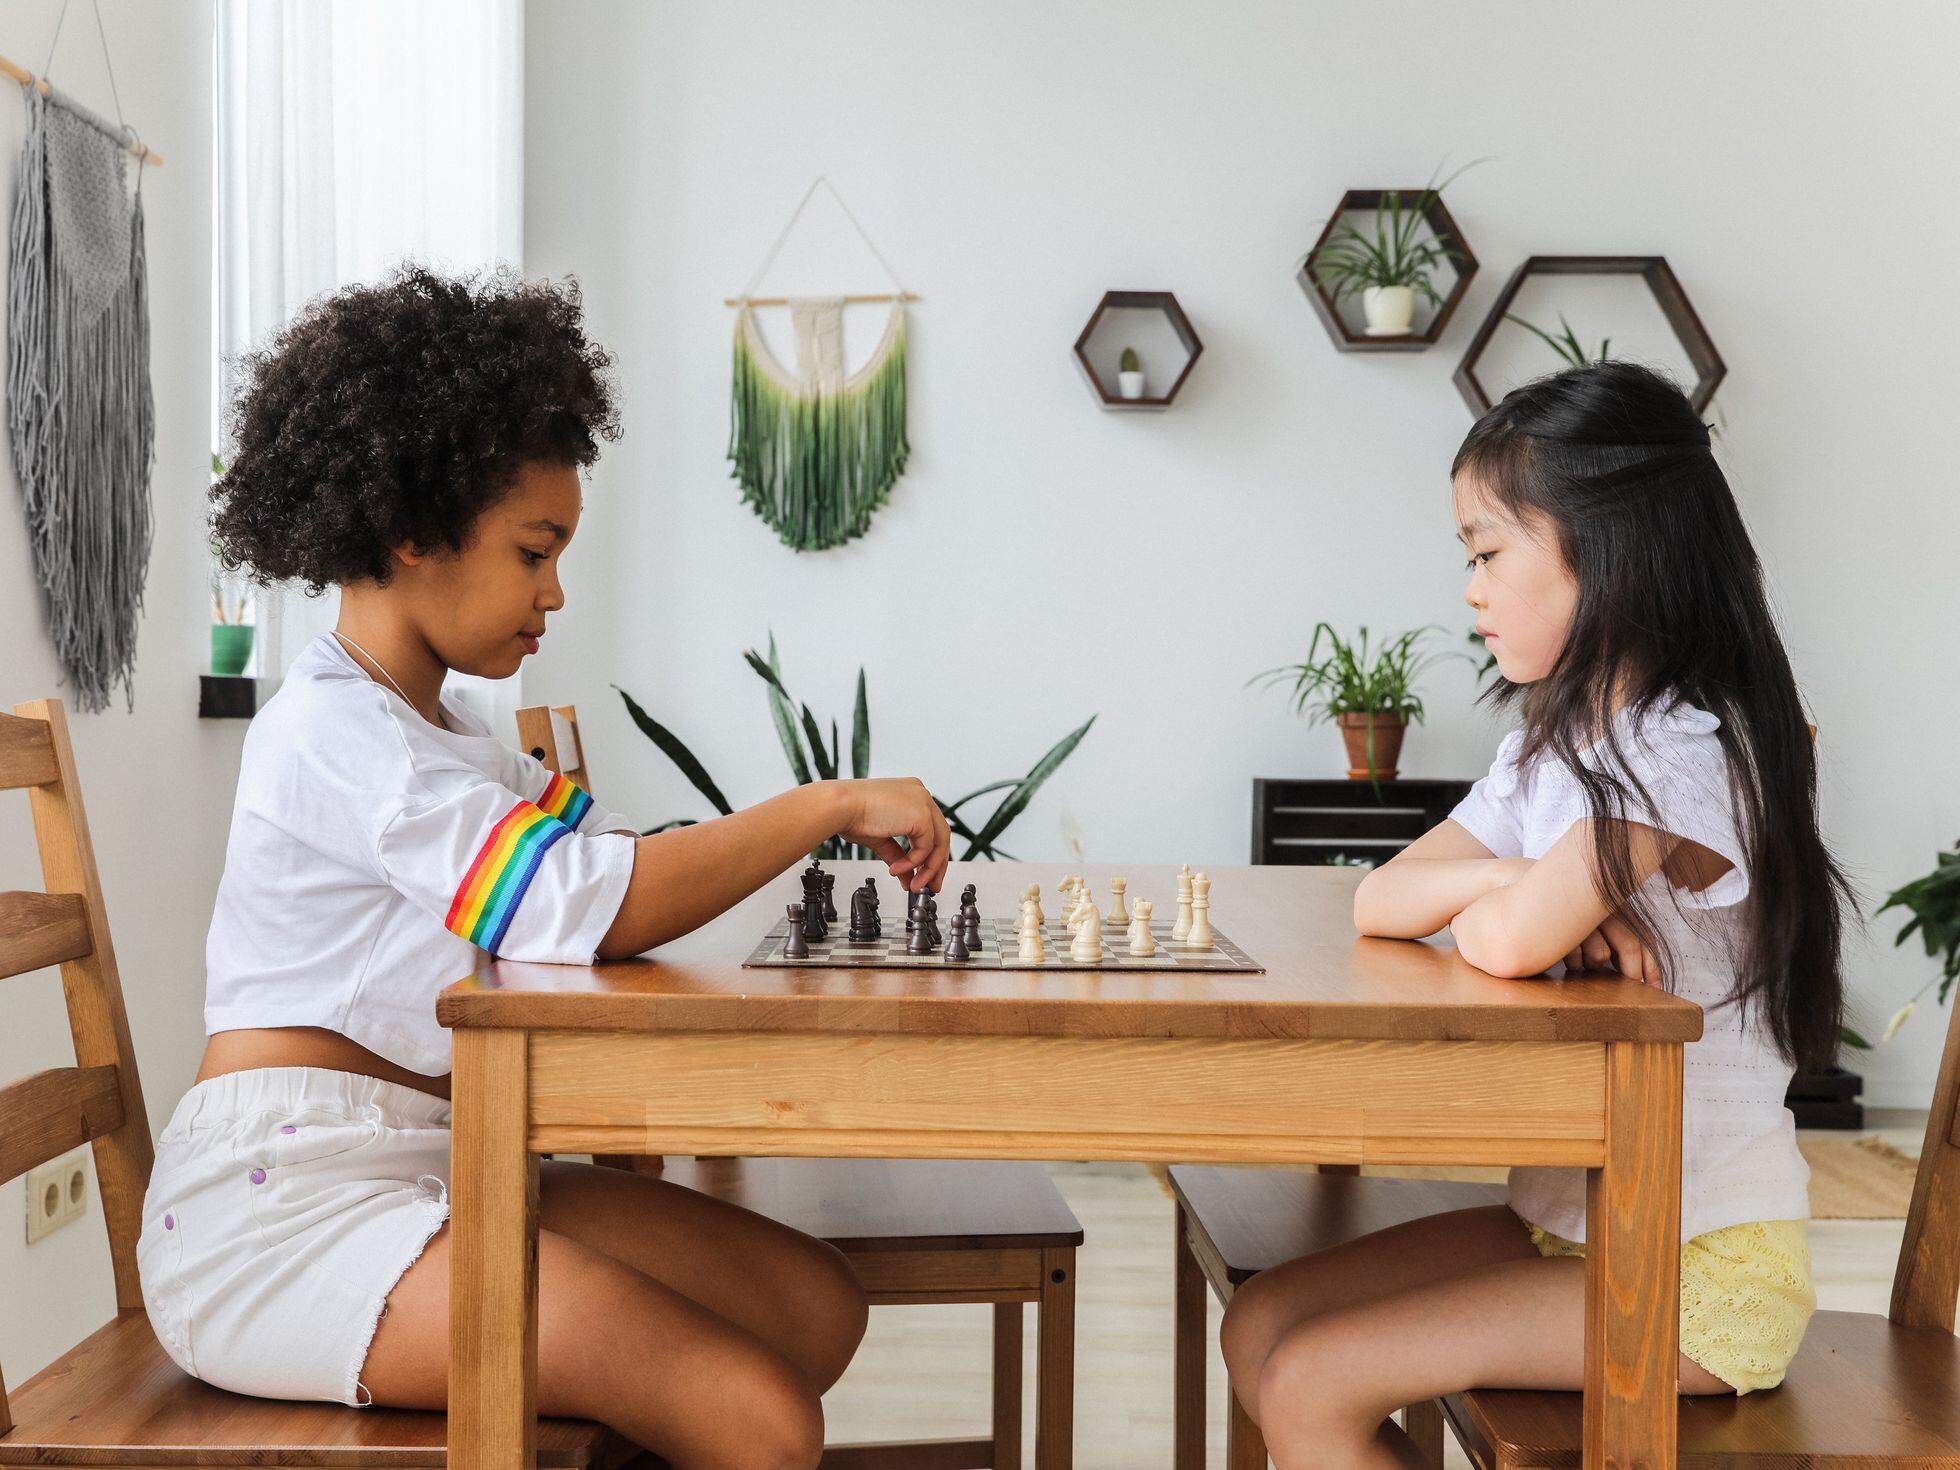 El juego de ajedrez y sus beneficios para los niños